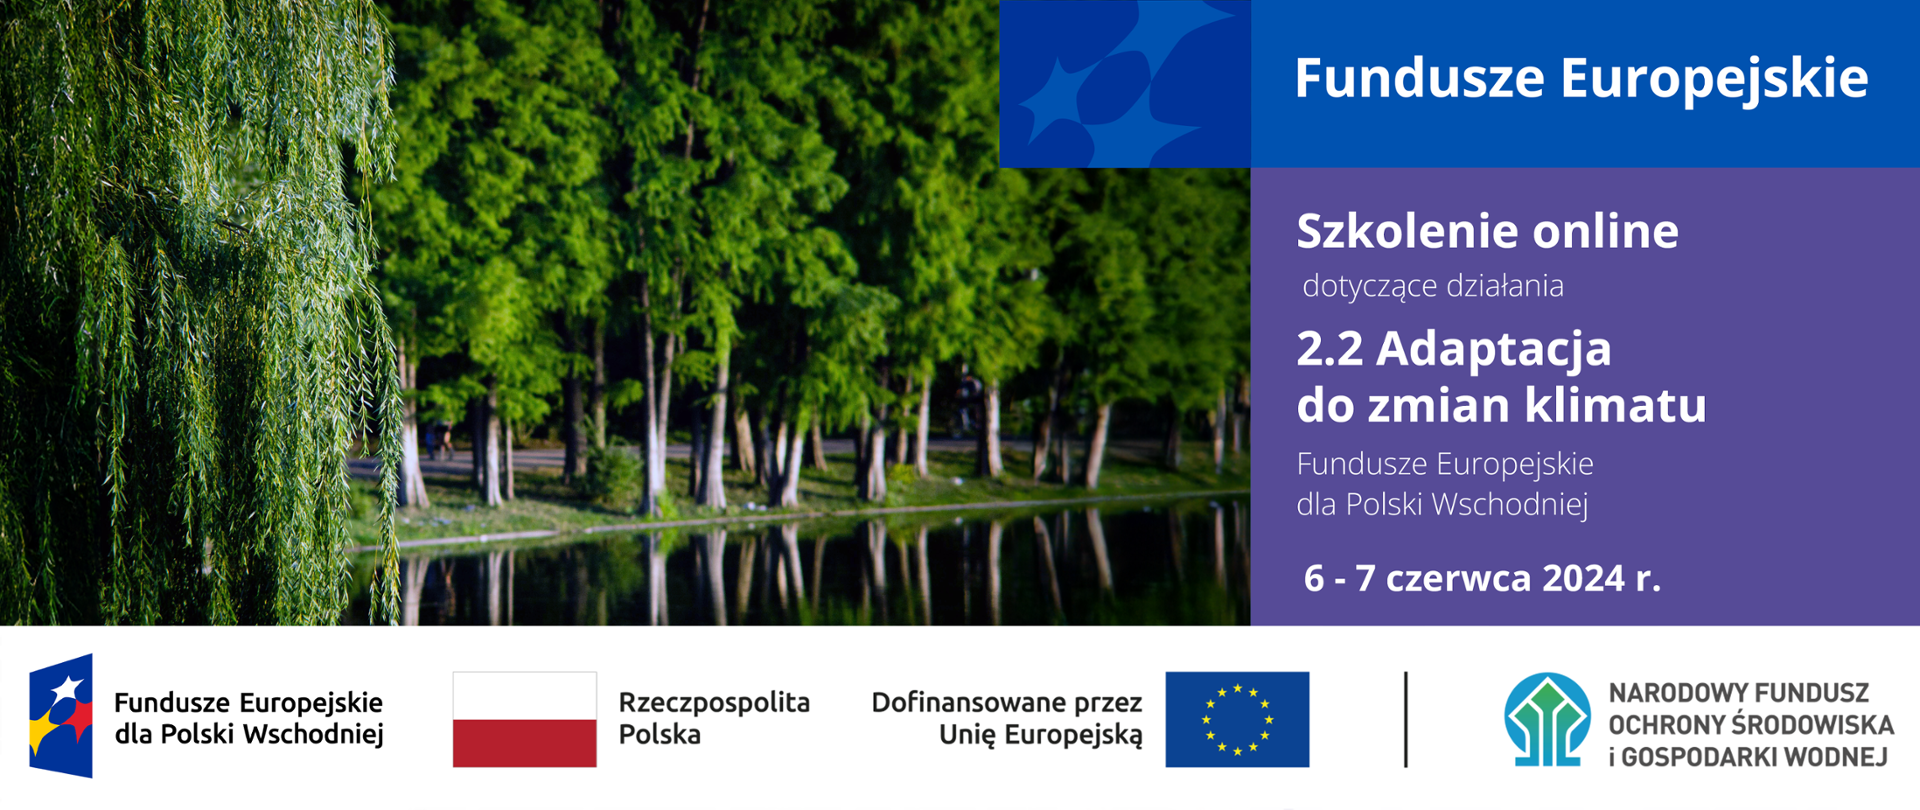 Infografika - po lewej stronie zdjęcie parku, po prawej napis: "Fundusze Europejskie Szkolenie online dotyczące działania 2.2 Adaptacja do zmian klimatu Fundusze Europejskie dla Polski Wschodniej 6 - 7 czerwca 2024 r.". Poniżej ciąg znaków: FEPW, RP, UE i NFOŚiGW.